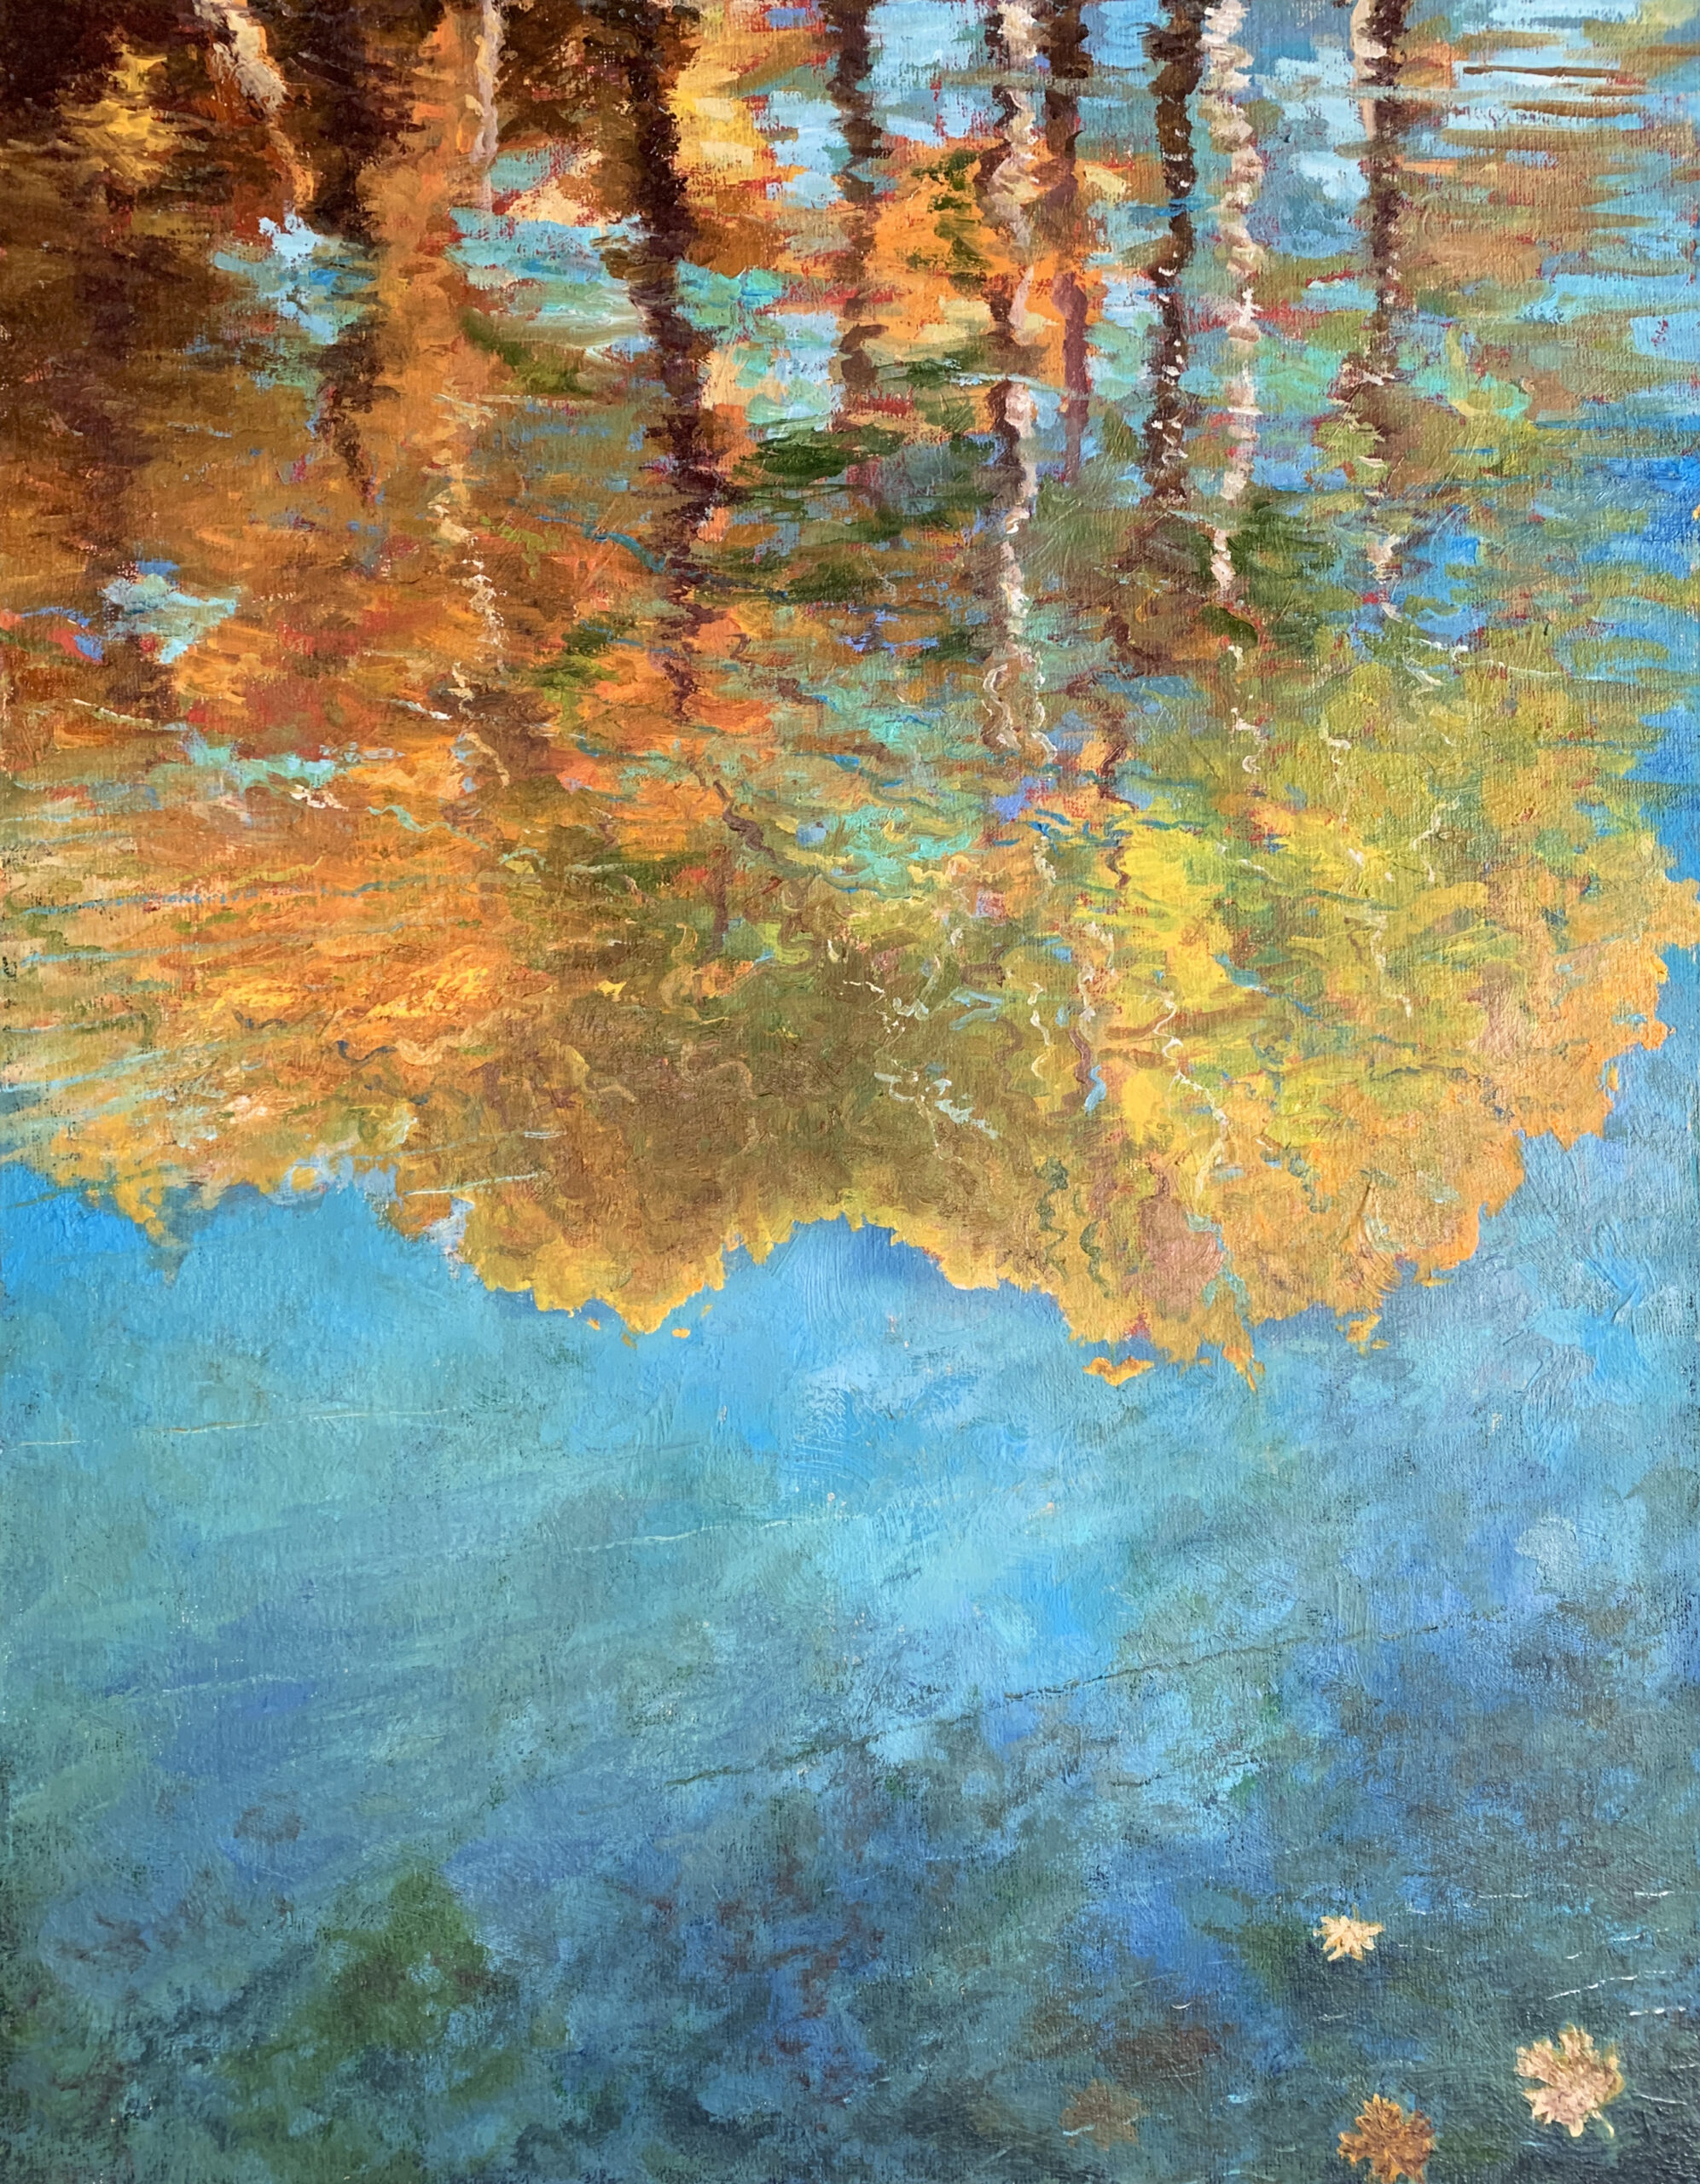 осень пруд отражение в воде деревья импрессионизм пейзаж художник Альберт Сафиуллин